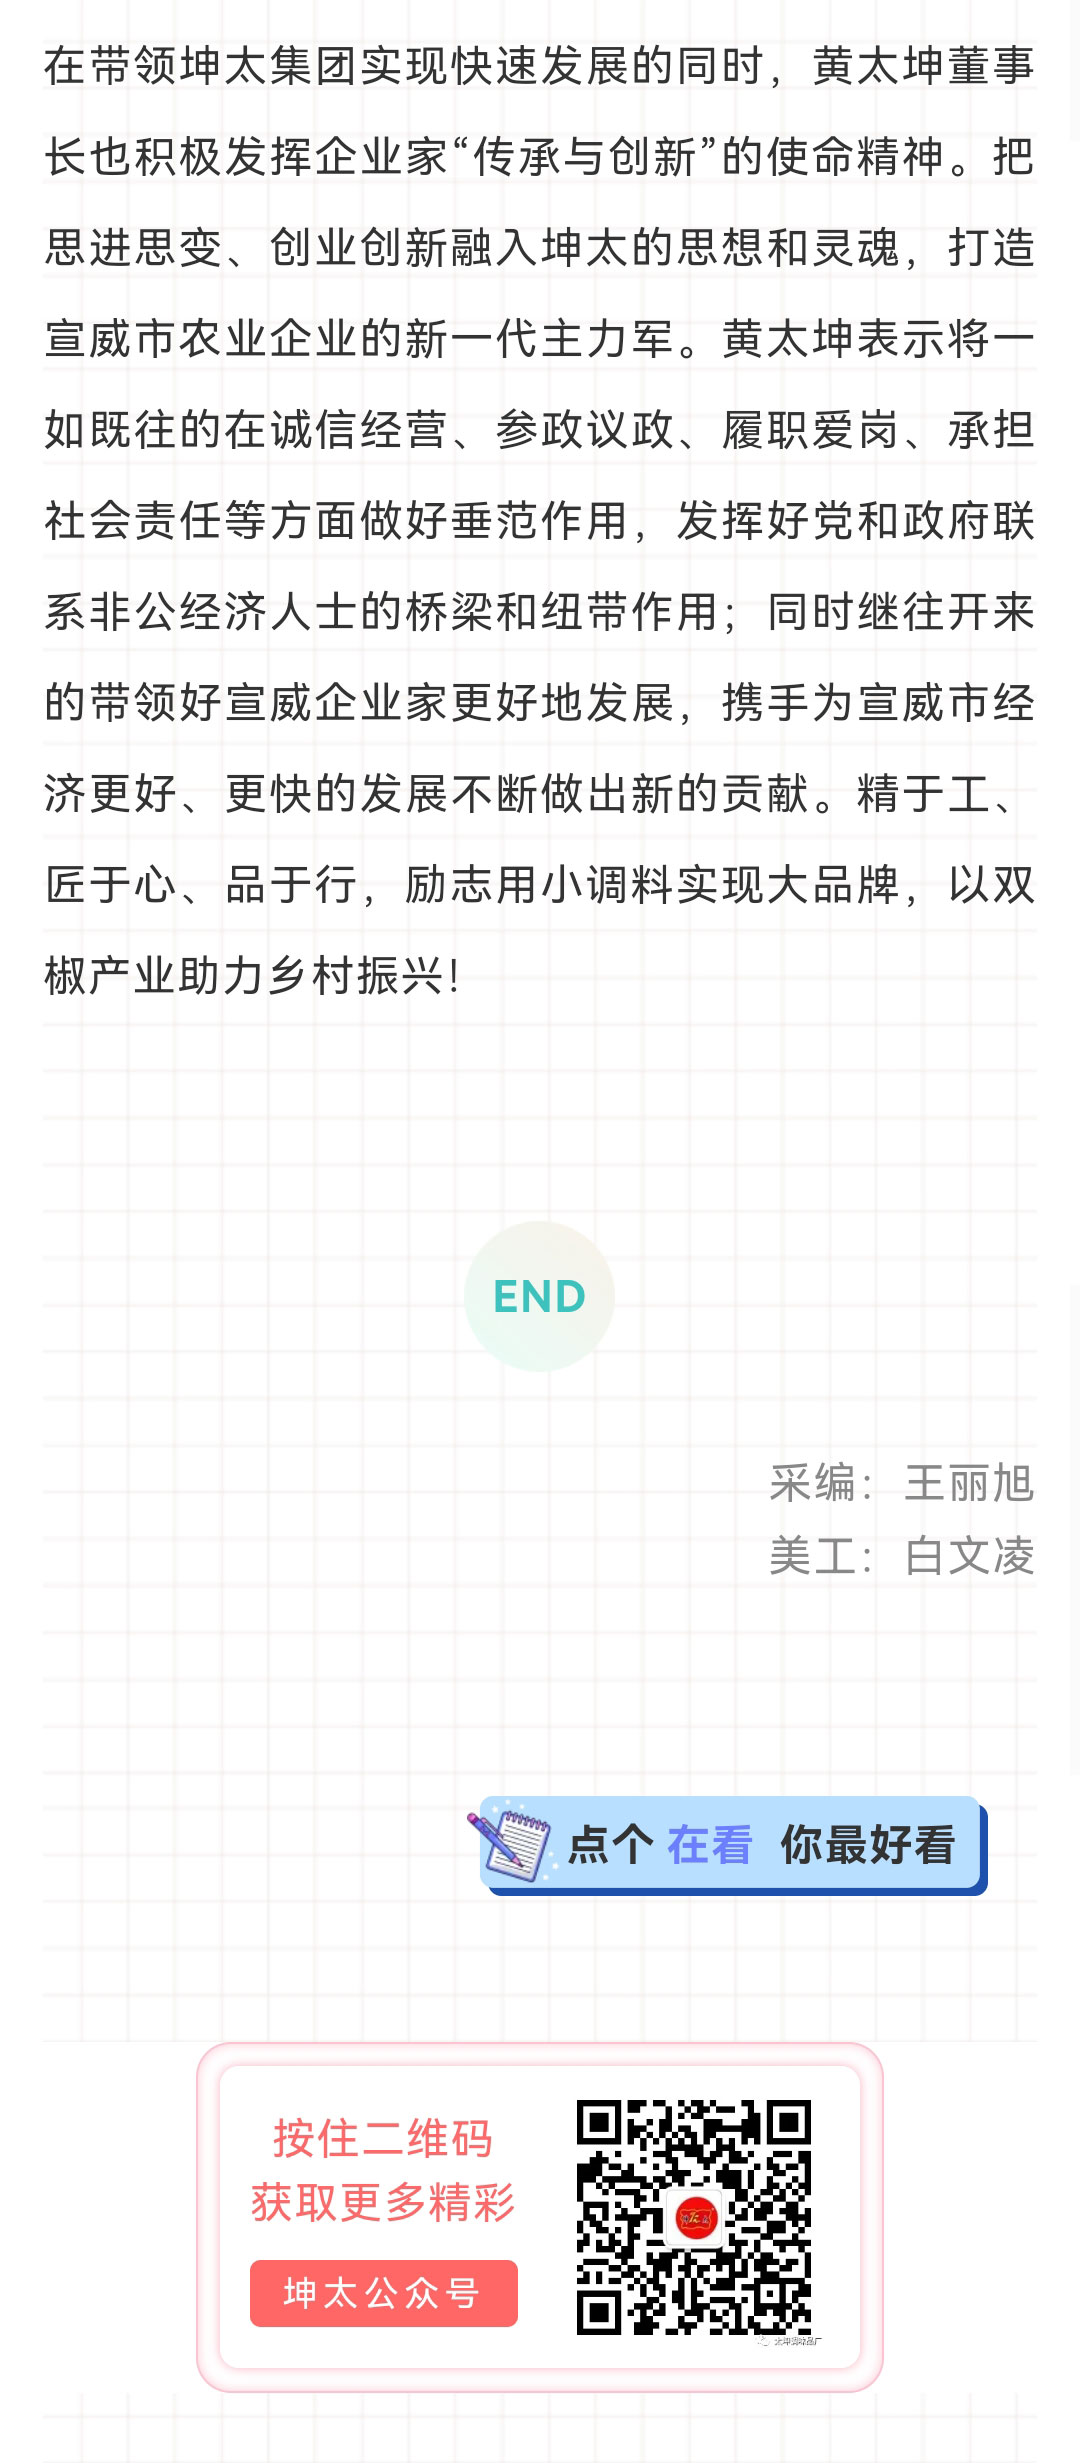 黄太坤荣获优秀中国特色社会主义事业建设者称号_03.jpg